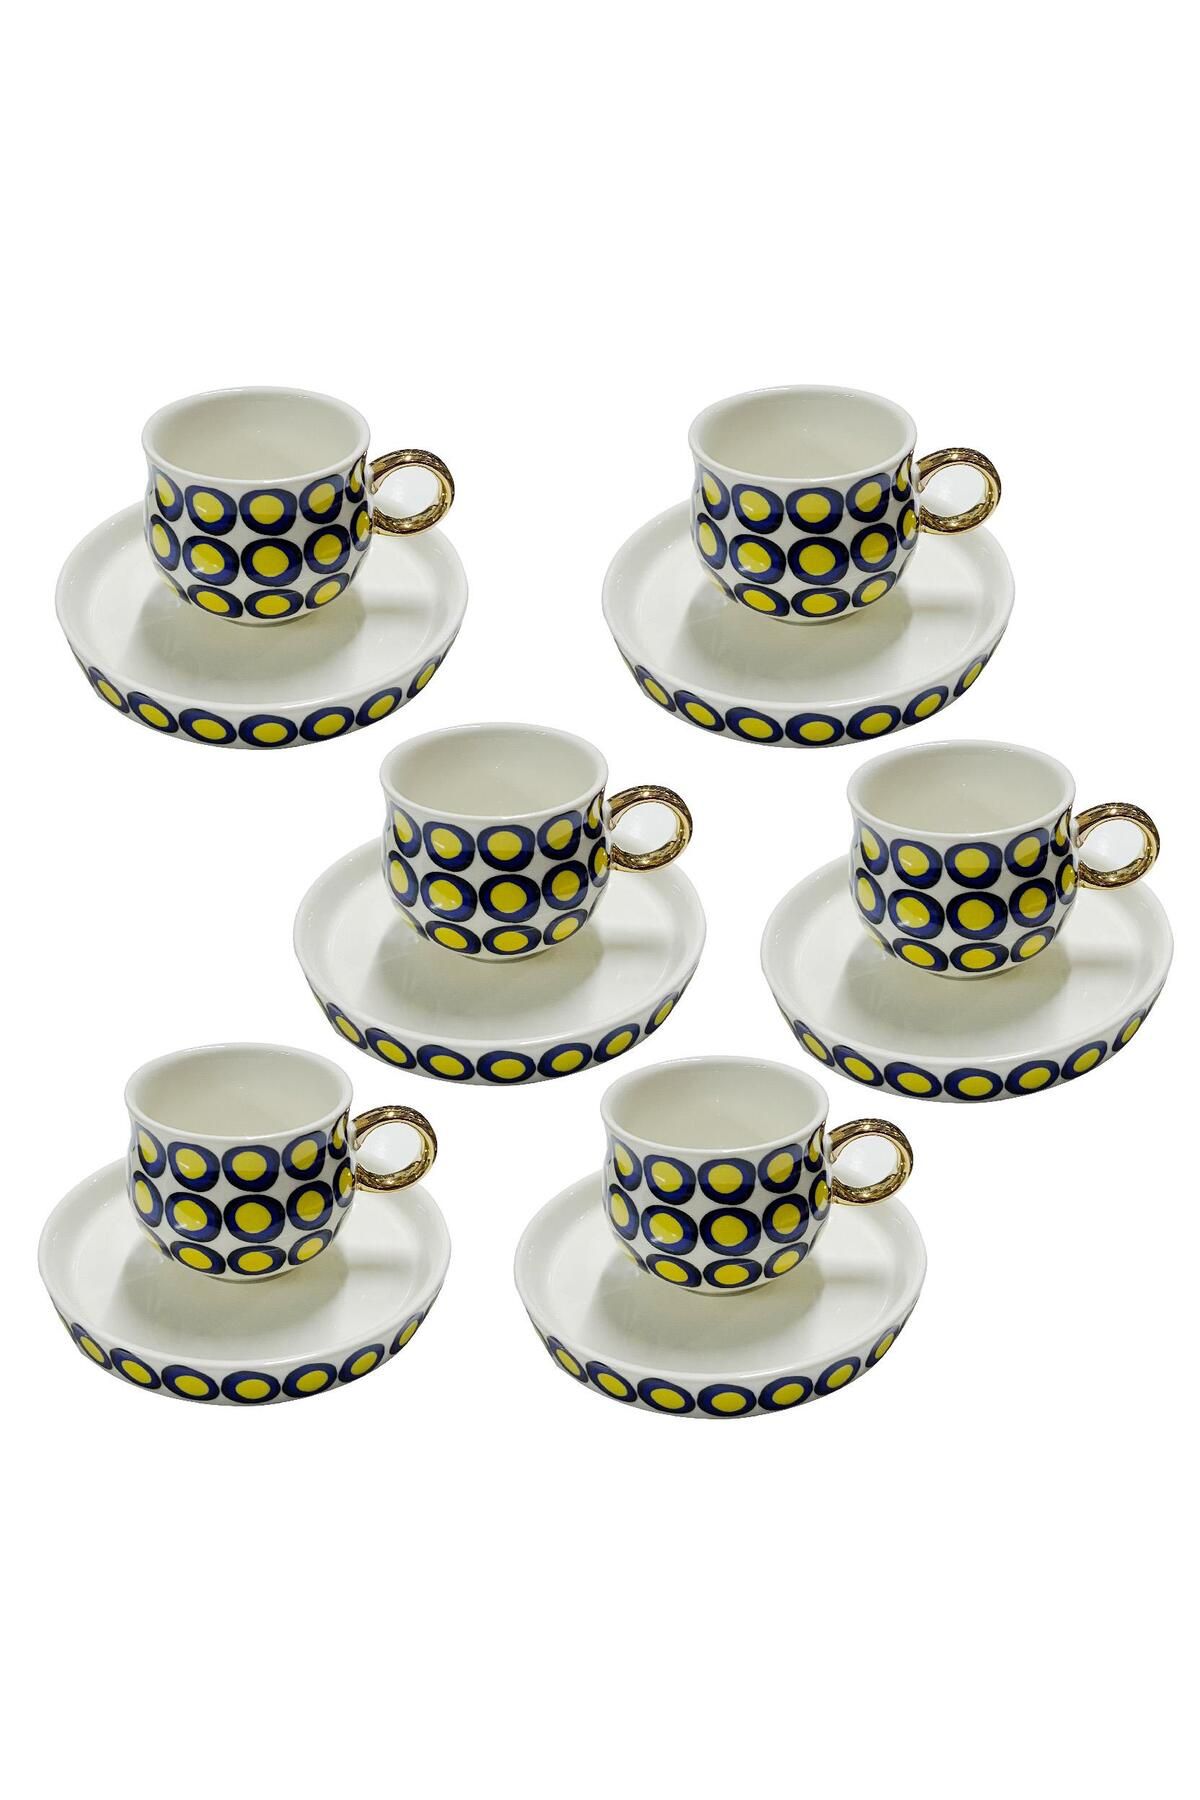 Schafer Porselen Kahve Fincan Takımı 6 Kişilik Sarı Desenli